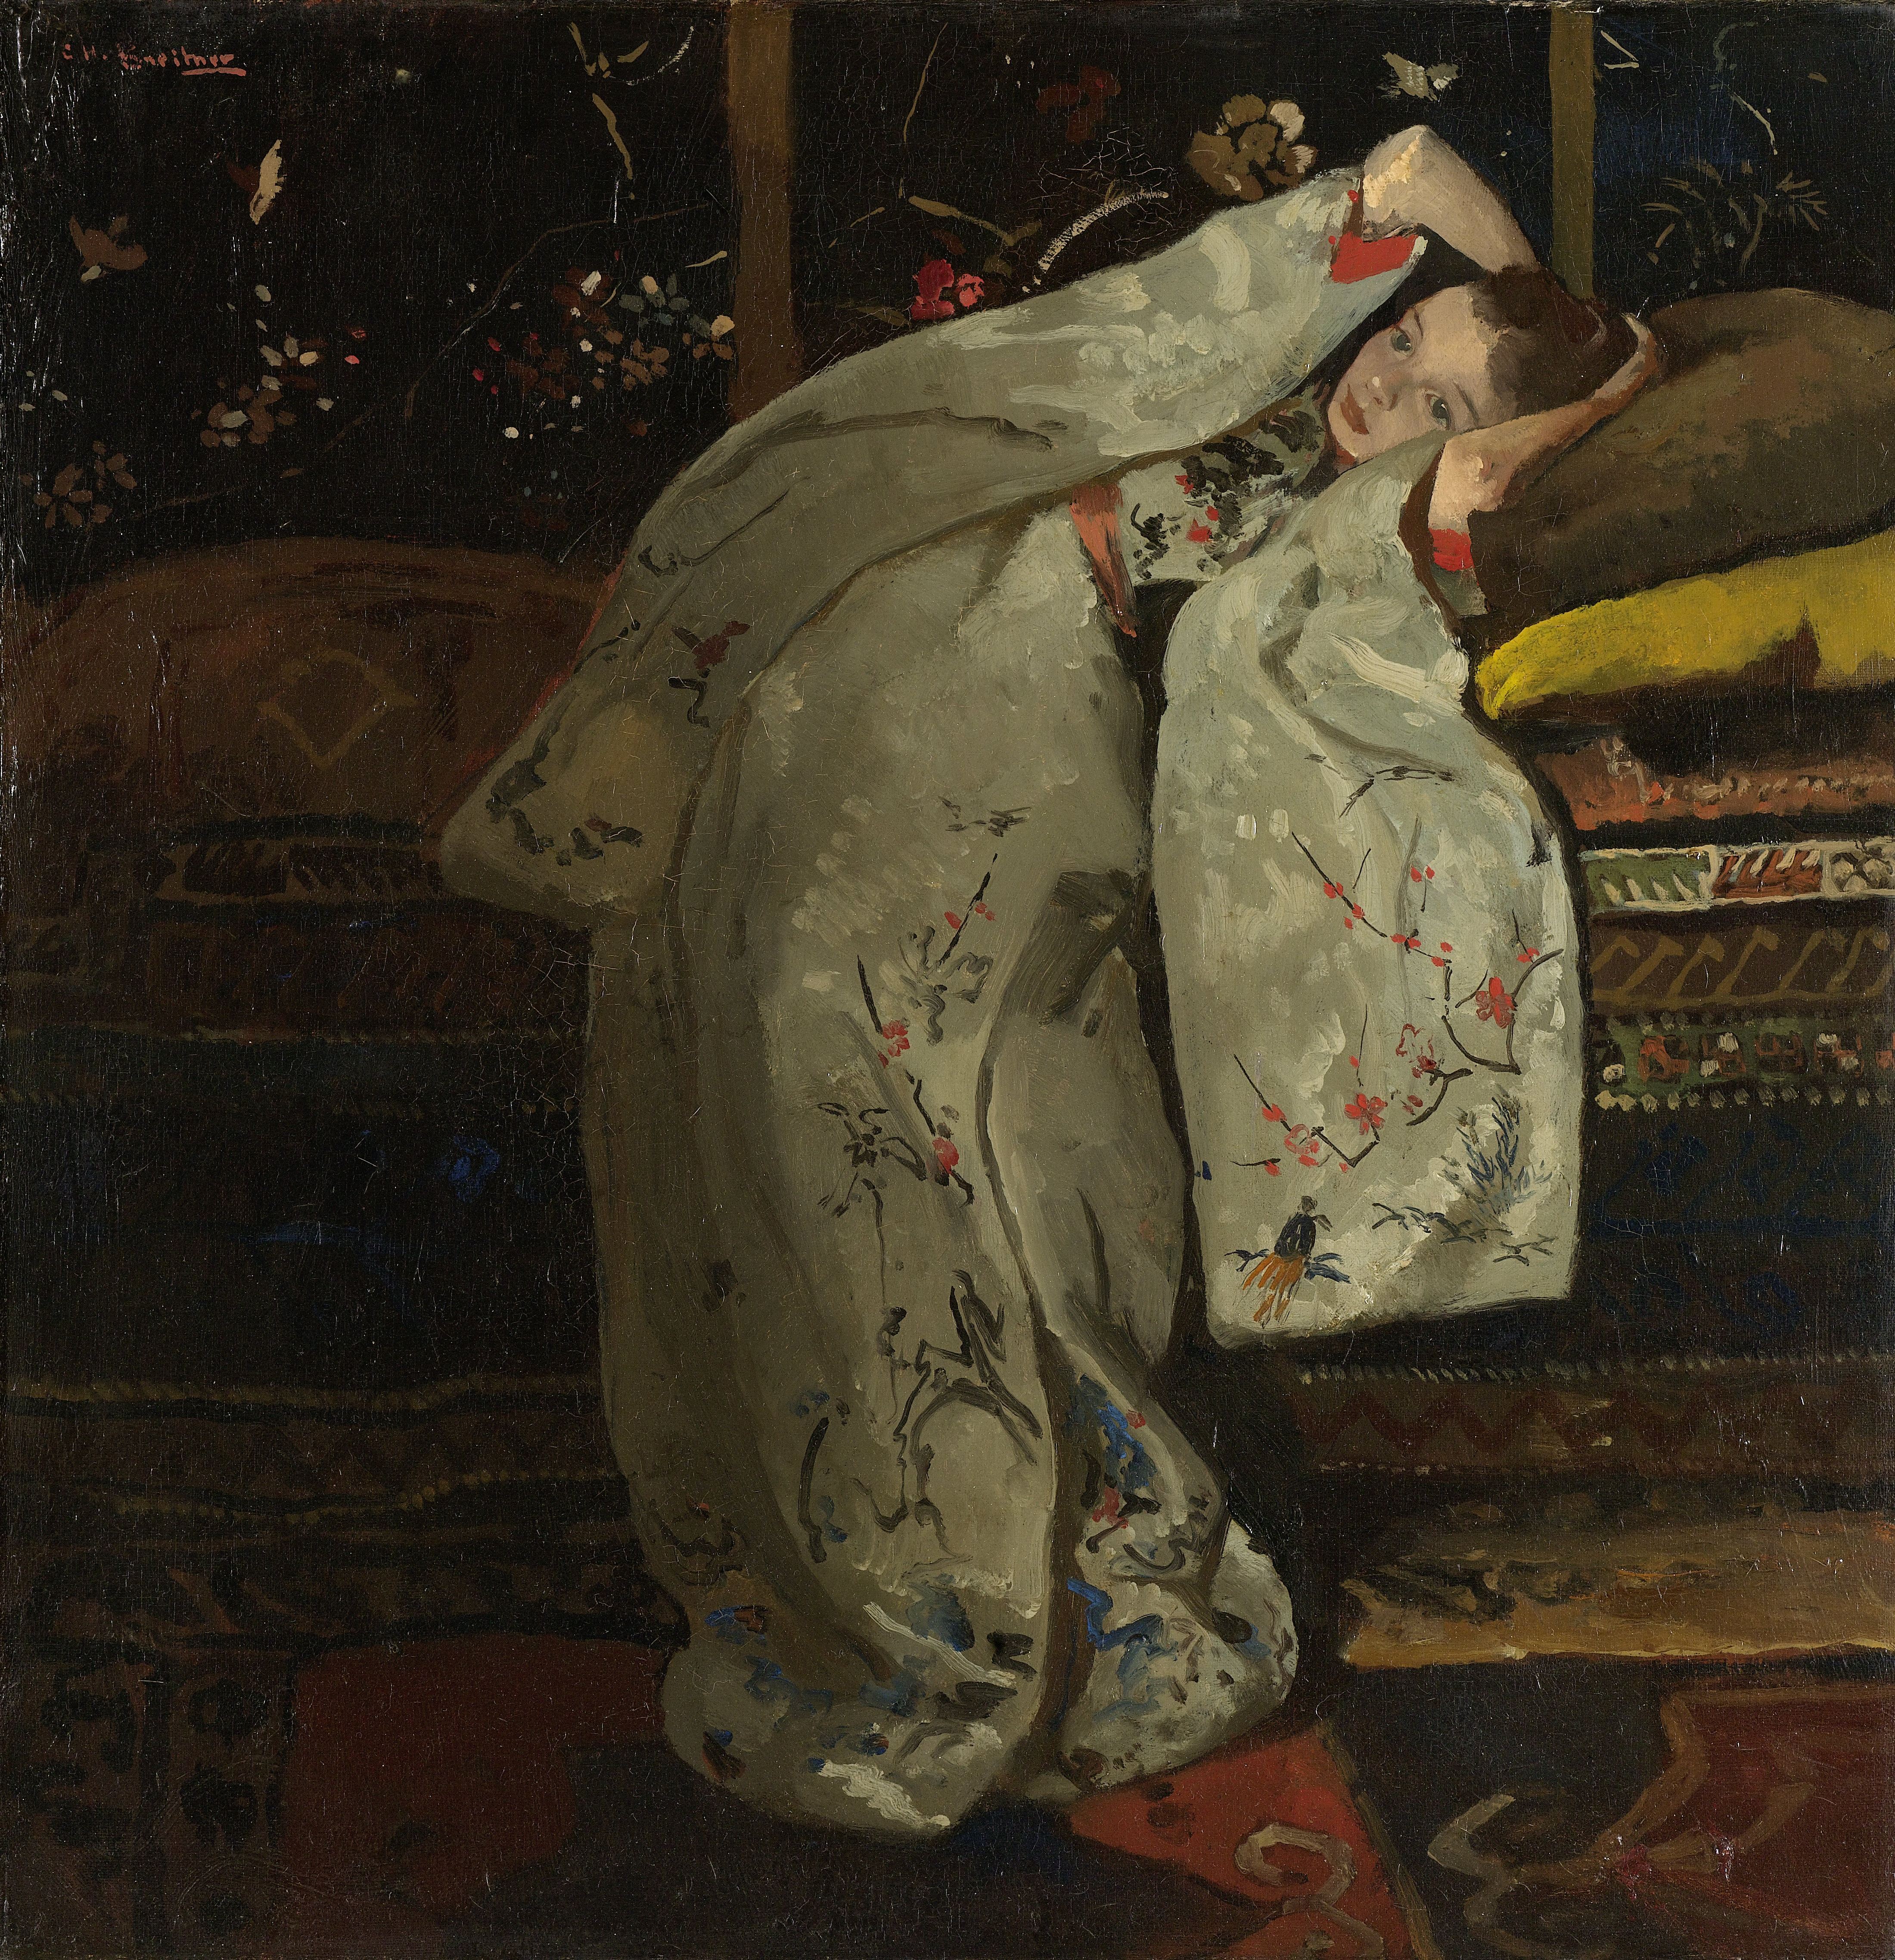 穿白色和服的女孩 by George Hendrik Breitner - 1894 - 59 × 57 cm 